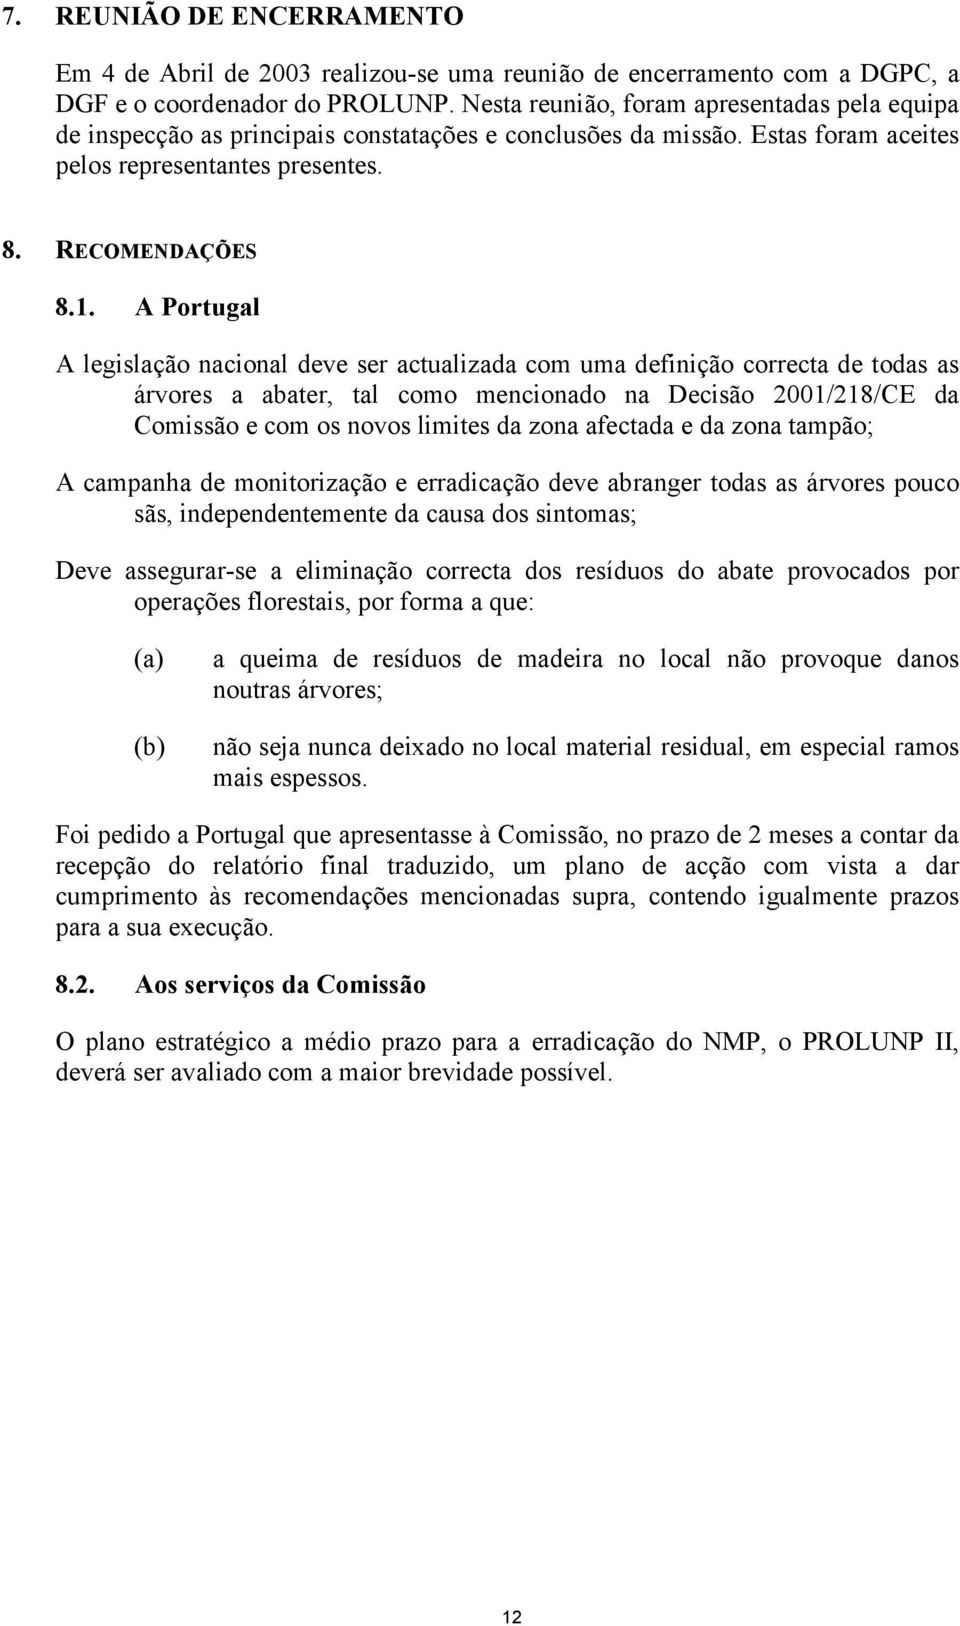 A Portugal A legislação nacional deve ser actualizada com uma definição correcta de todas as árvores a abater, tal como mencionado na Decisão 2001/218/CE da Comissão e com os novos limites da zona